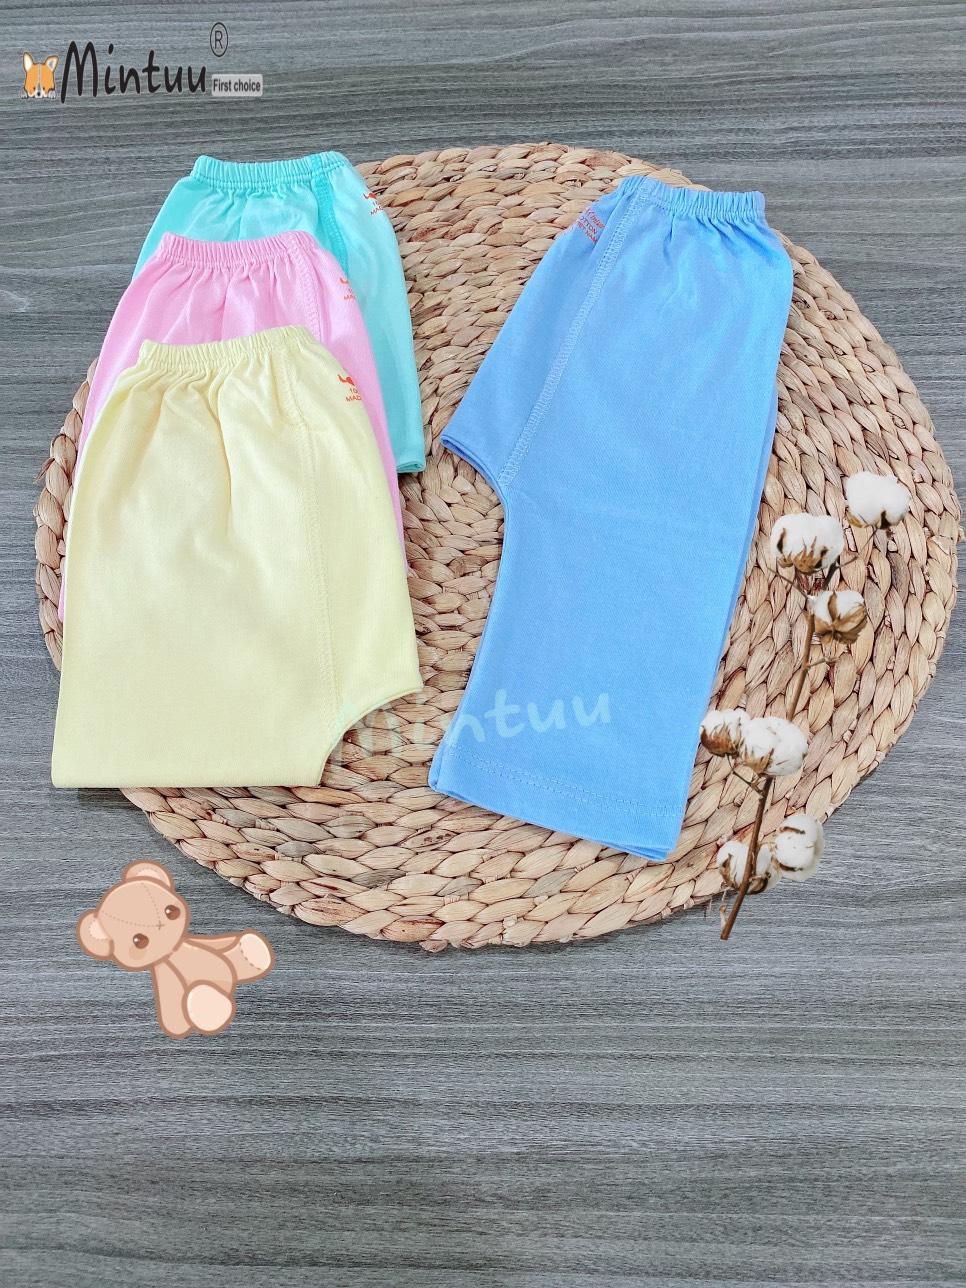 Quần đáy nêm, quần đóng bỉm màu cho bé sơ sinh thương hiệu MINTUU, chất liệu vải 100% cotton - Vàng